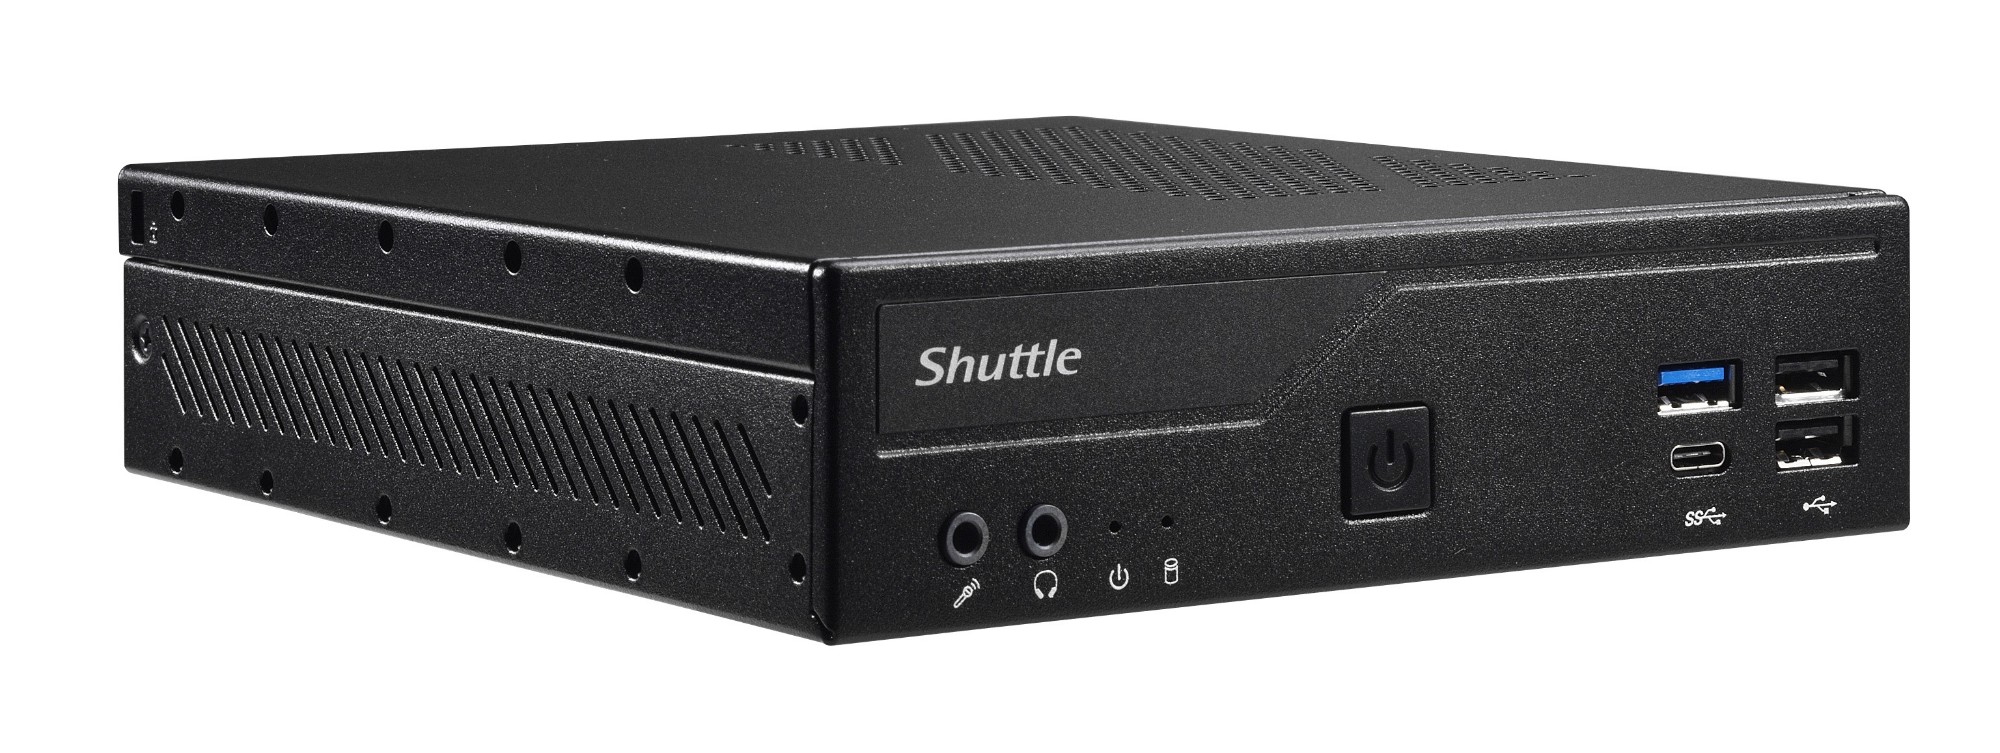 Shuttle Slim PC DH610 , S1700, 1x HDMI, 2x DP , 1x 2.5", 2x M.2, 2x LAN (Intel 1G + 2.5G), 2x COM, 24/7 permanent operation, incl. VESA